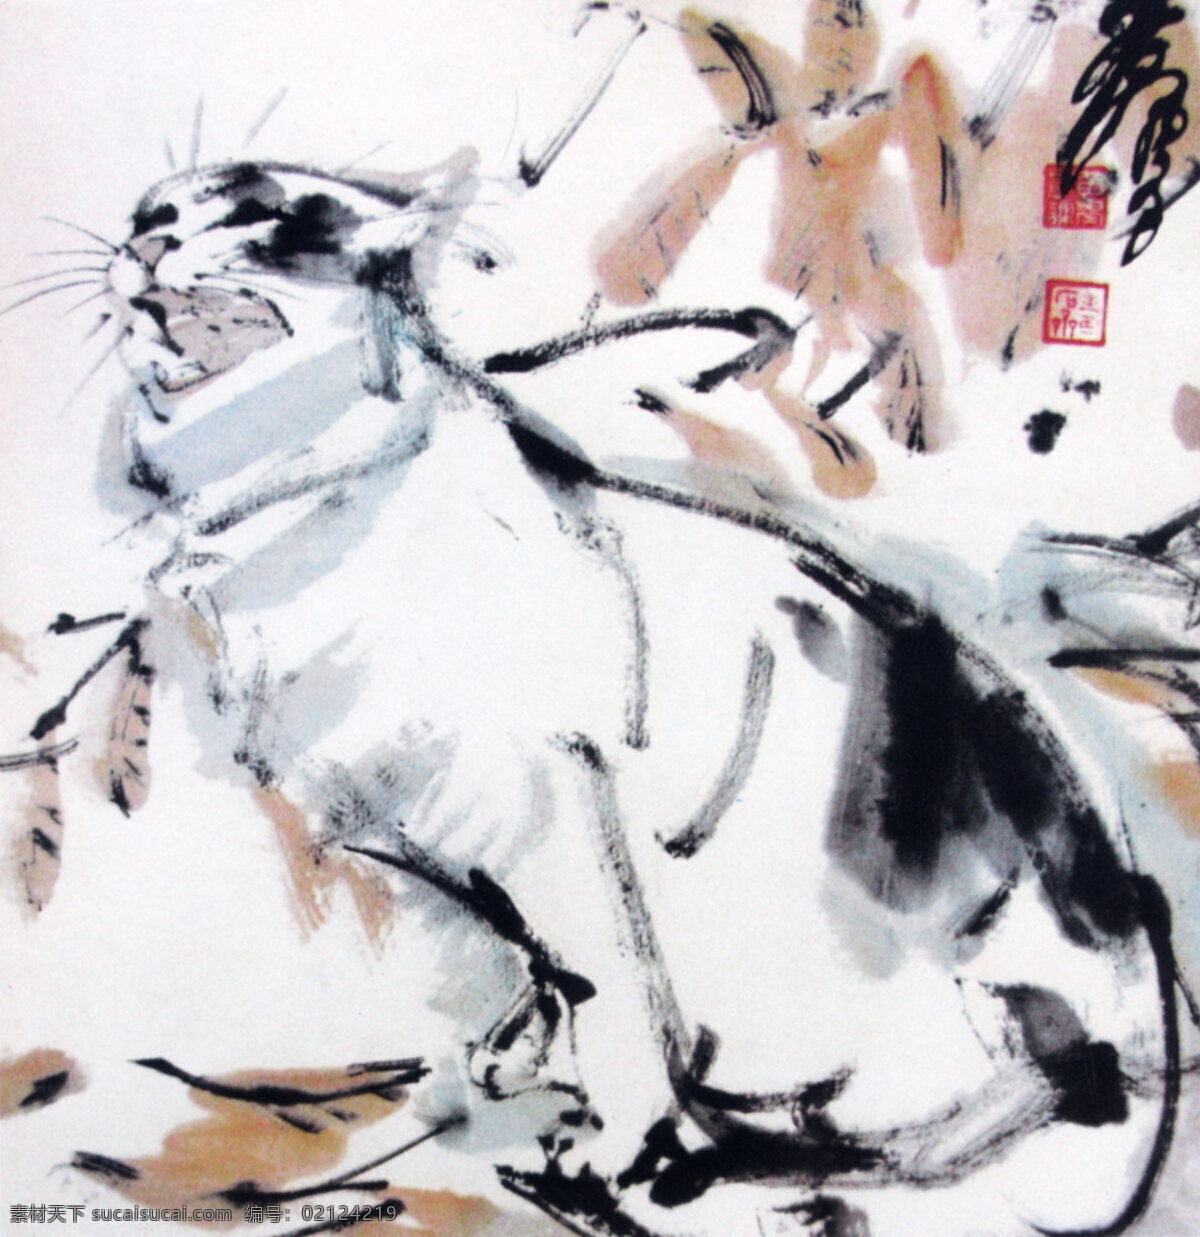 秋叶花猫 黄胄作品 动物国画 动物水墨画 设计素材 动物画篇 中国画篇 书画美术 白色